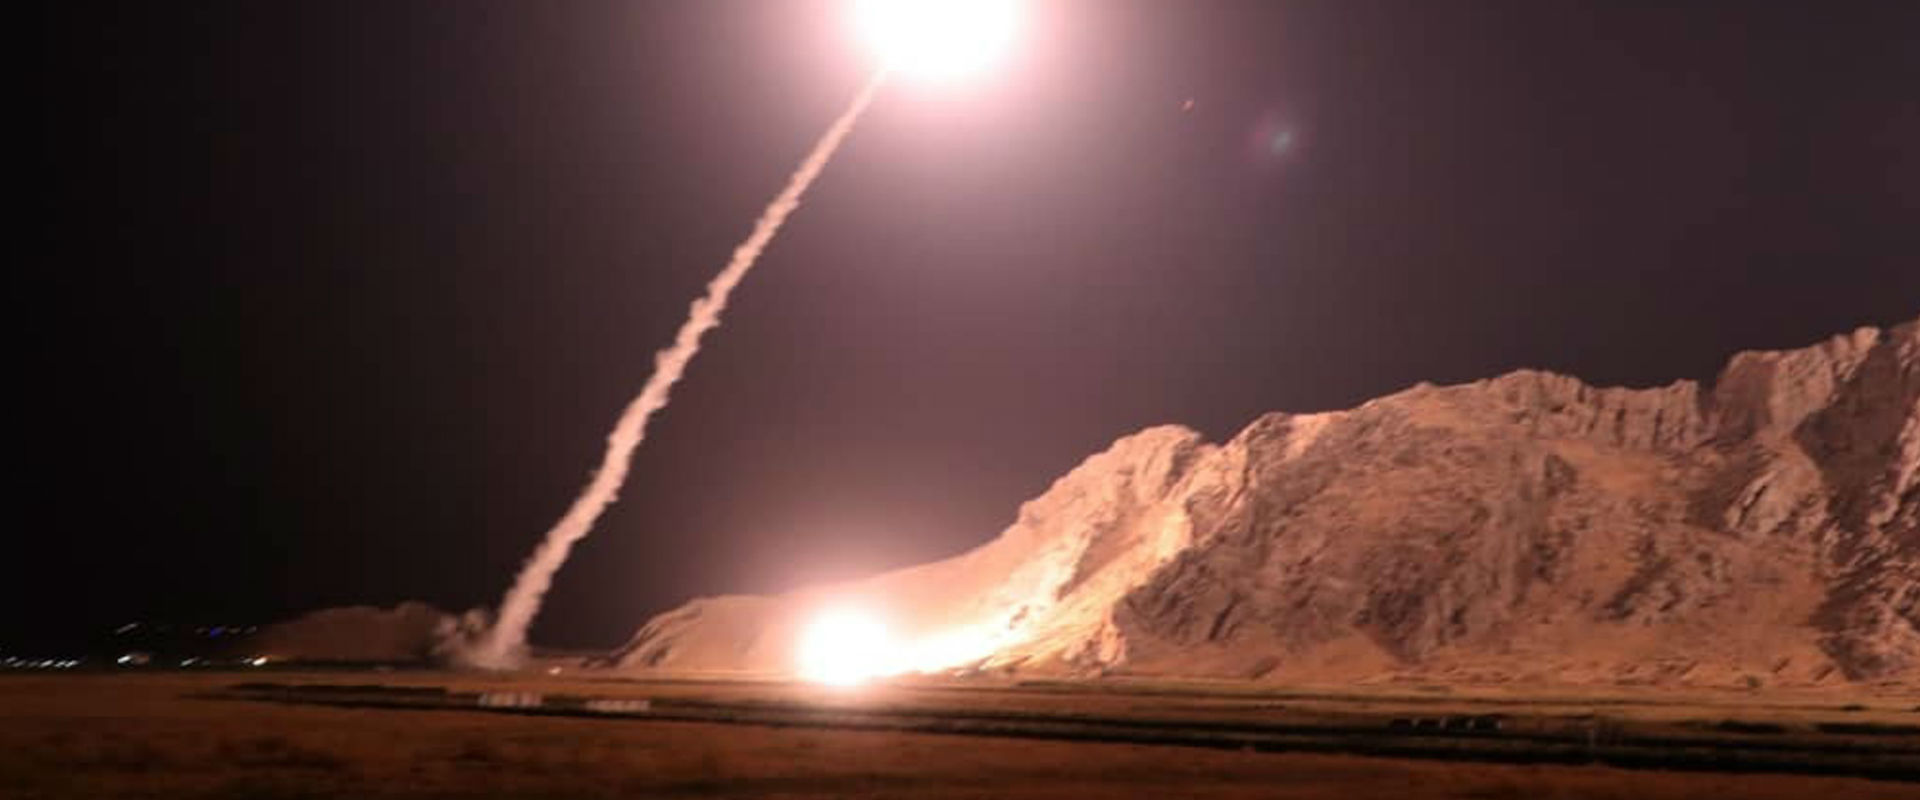 תיעוד שיגור הטילים לסוריה, כפי שפורסם באיראן